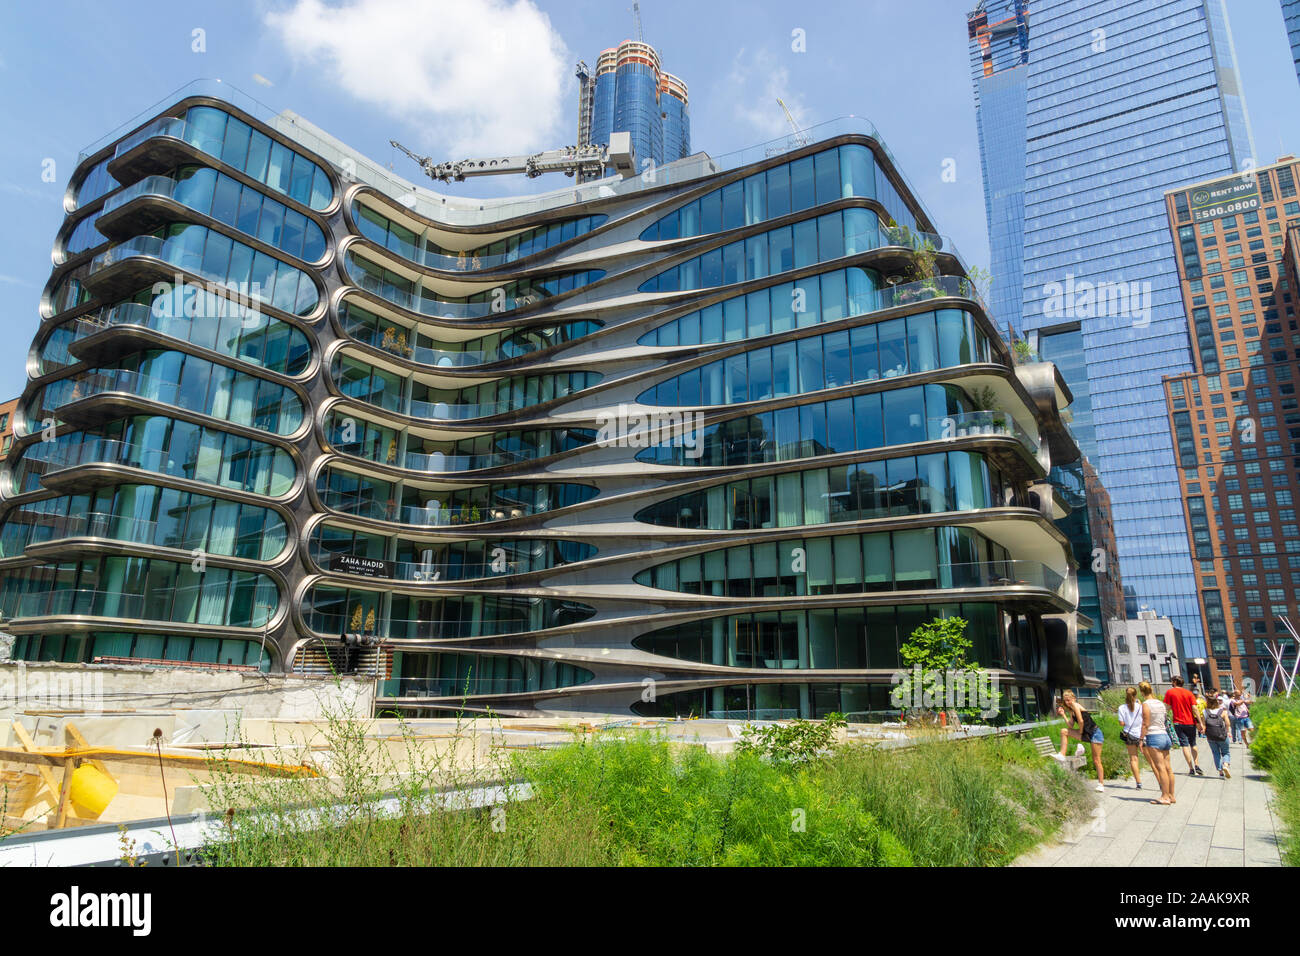 New York, Stati Uniti d'America - 20 agosto 2018 vista la 520 West 28th Street condominio Residences progettato dall'architetto Zaha Hadid lungo la linea alta. Foto Stock